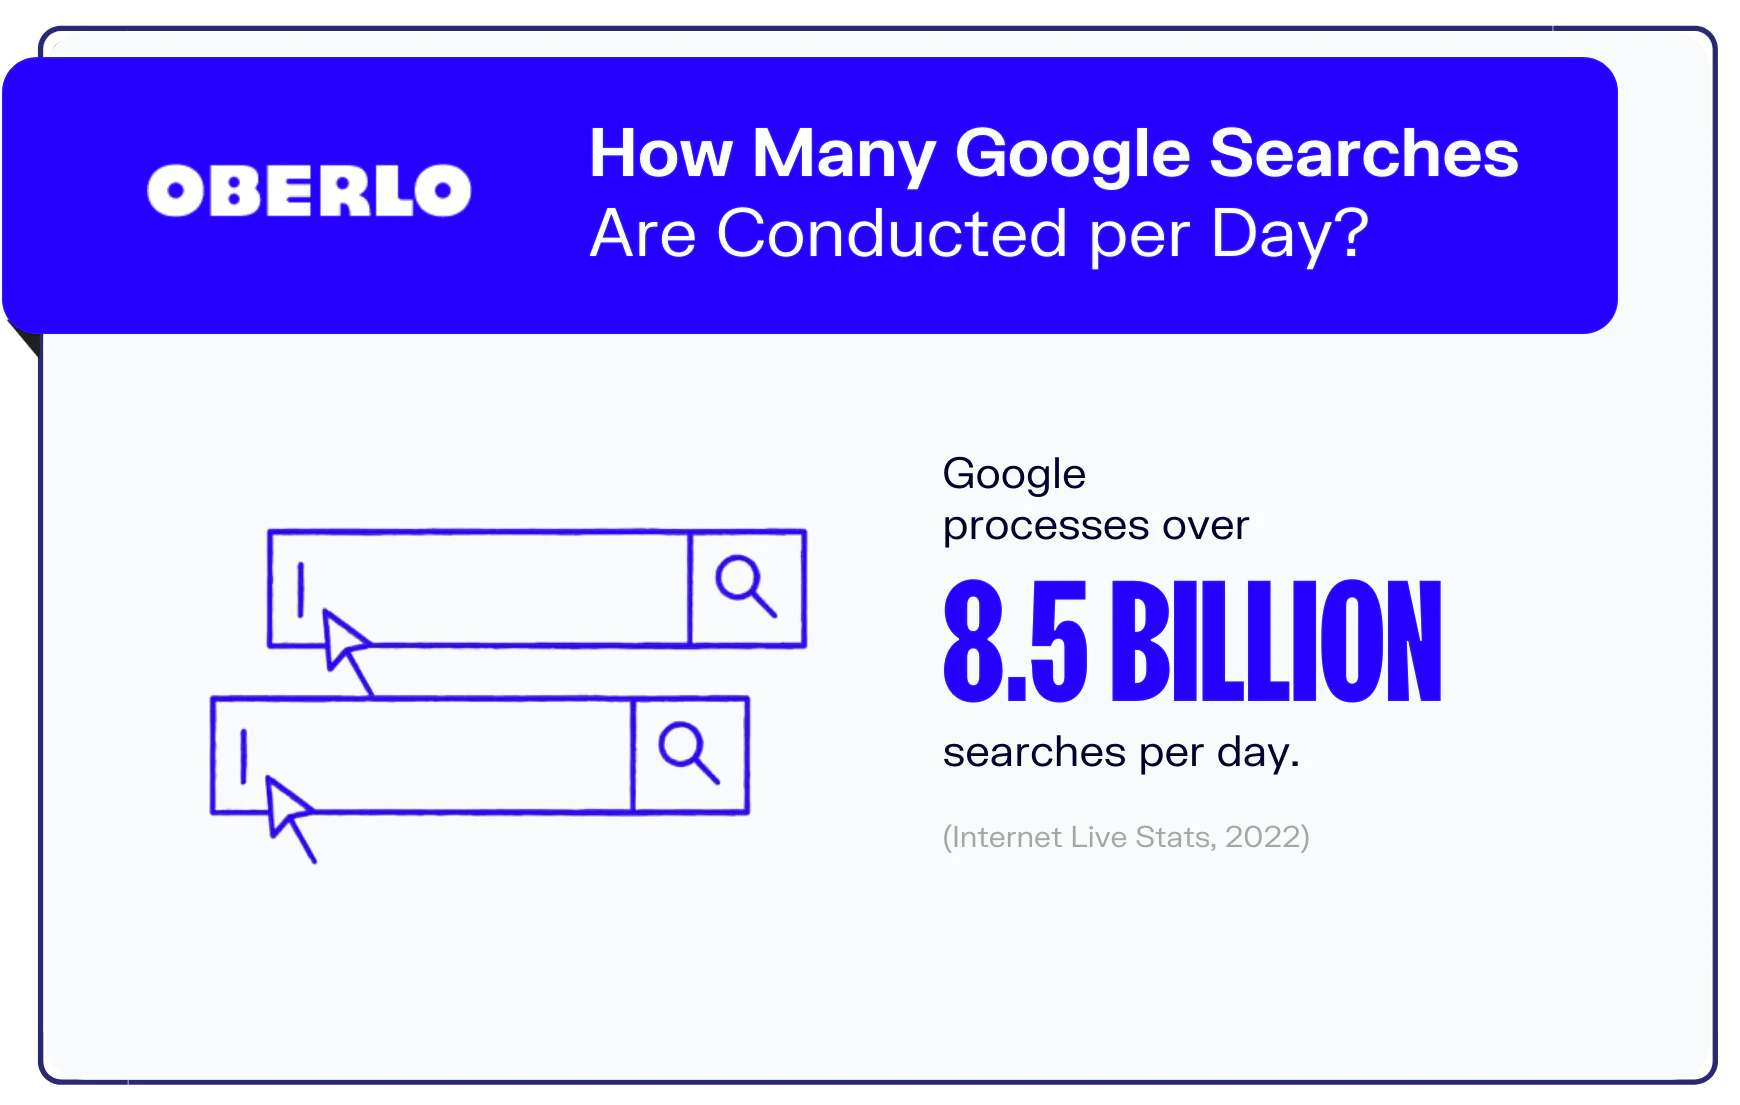 google per day searches statistics